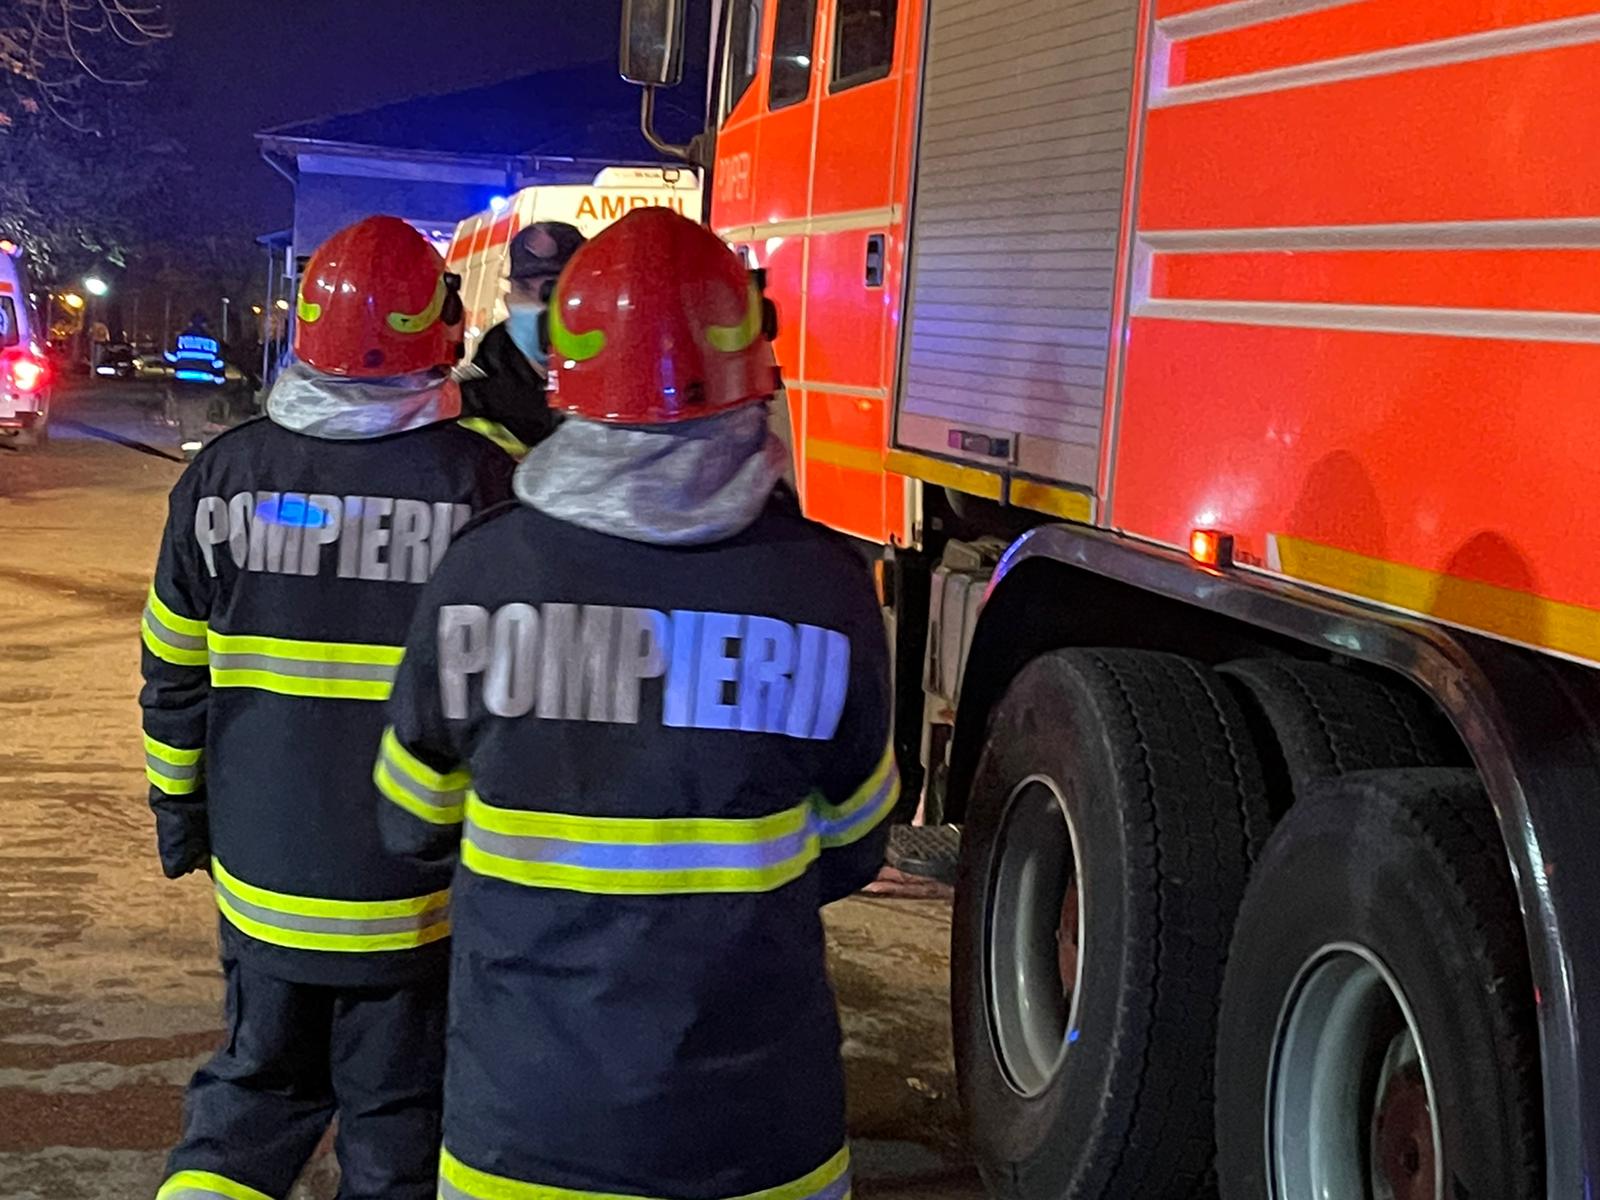 Doi pacienți carbonizați într-un incendiu la Spitalul Județean Ploiești. Dosar penal deschis pentru ucidere din culpă